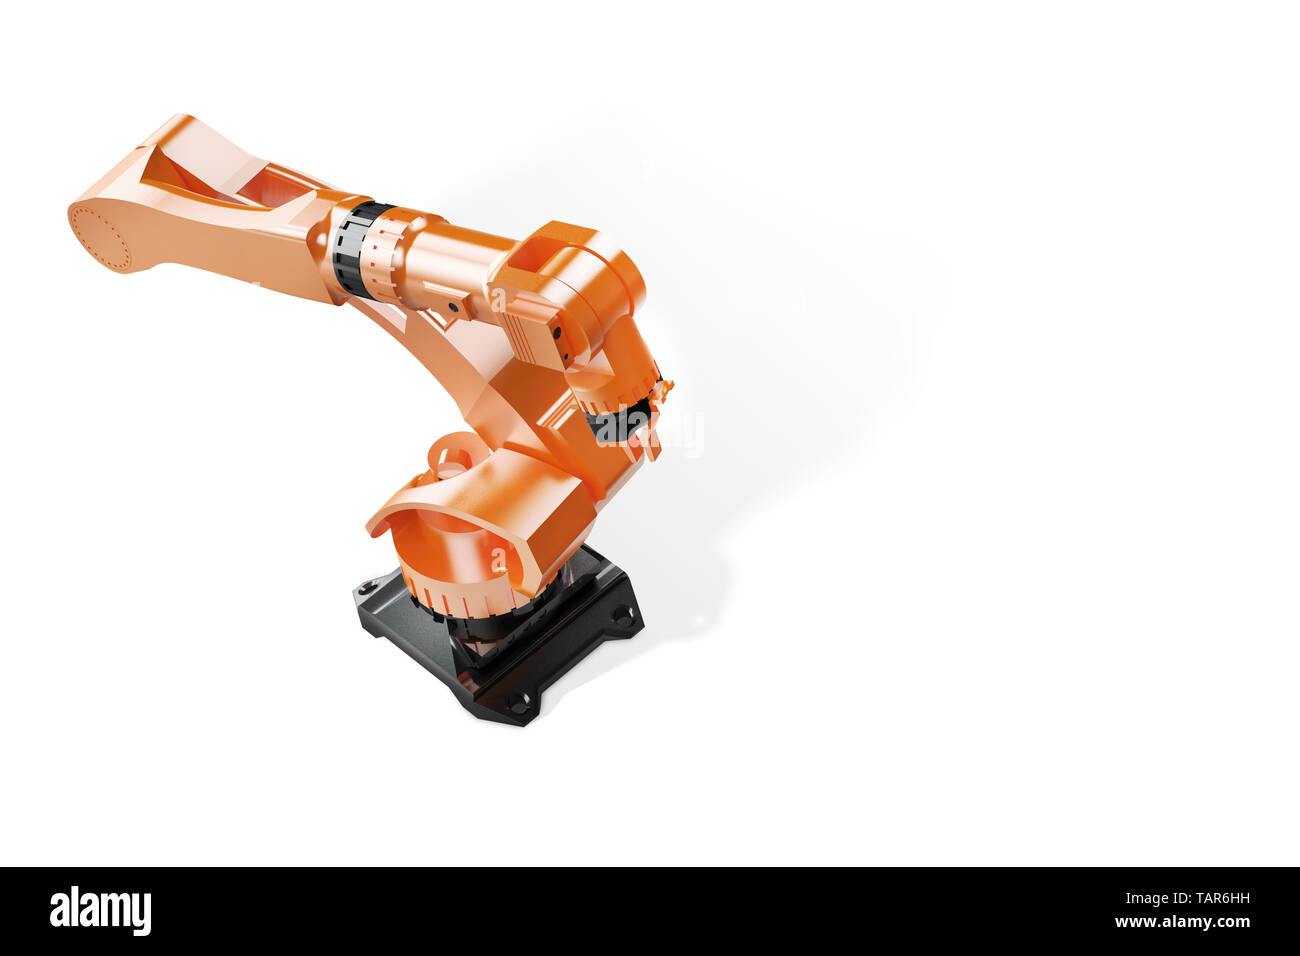 Robot industriel usine illustration Banque d'images détourées - Alamy